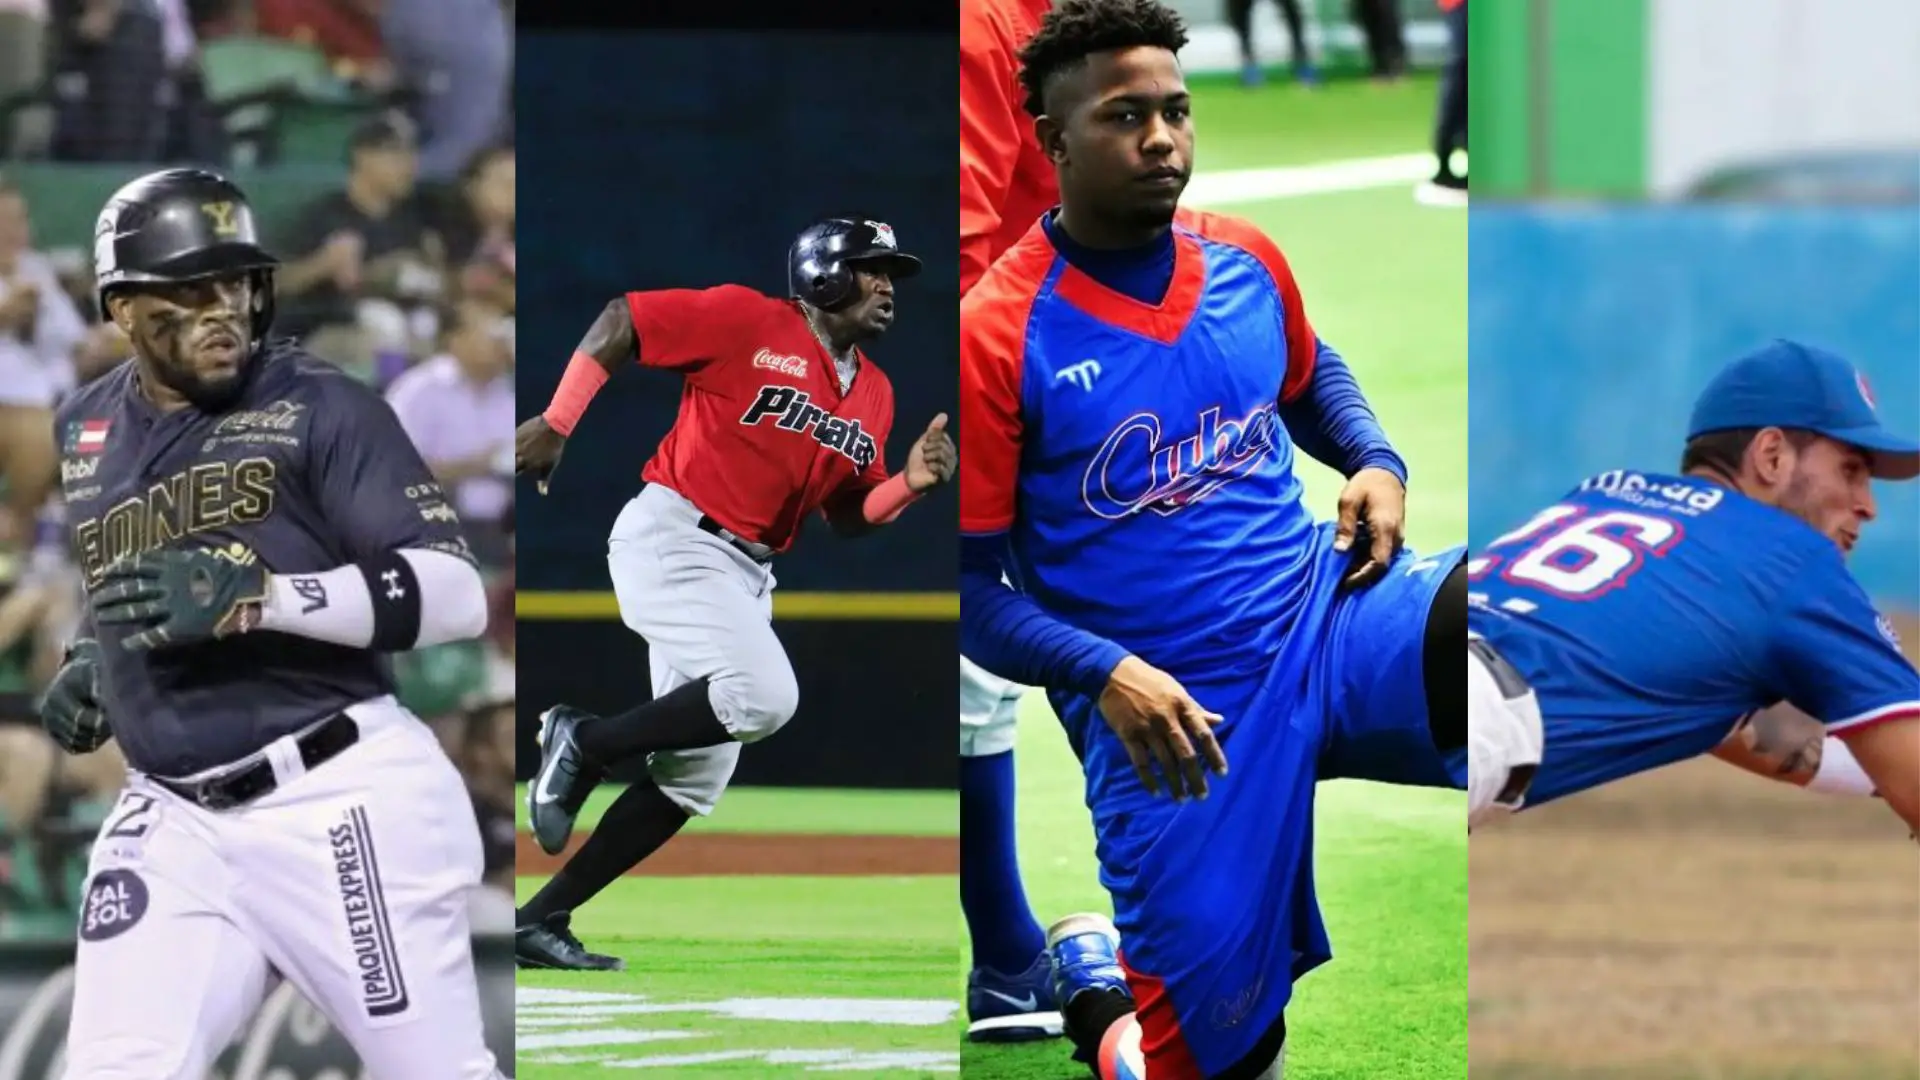 La Liga Meridana de Béisbol realizará su Juego de Estrellas y varios jugadores cubanos fueron seleccionados para participar en el encuentro que tendrá lugar el próximo domingo en el campo Cordemex